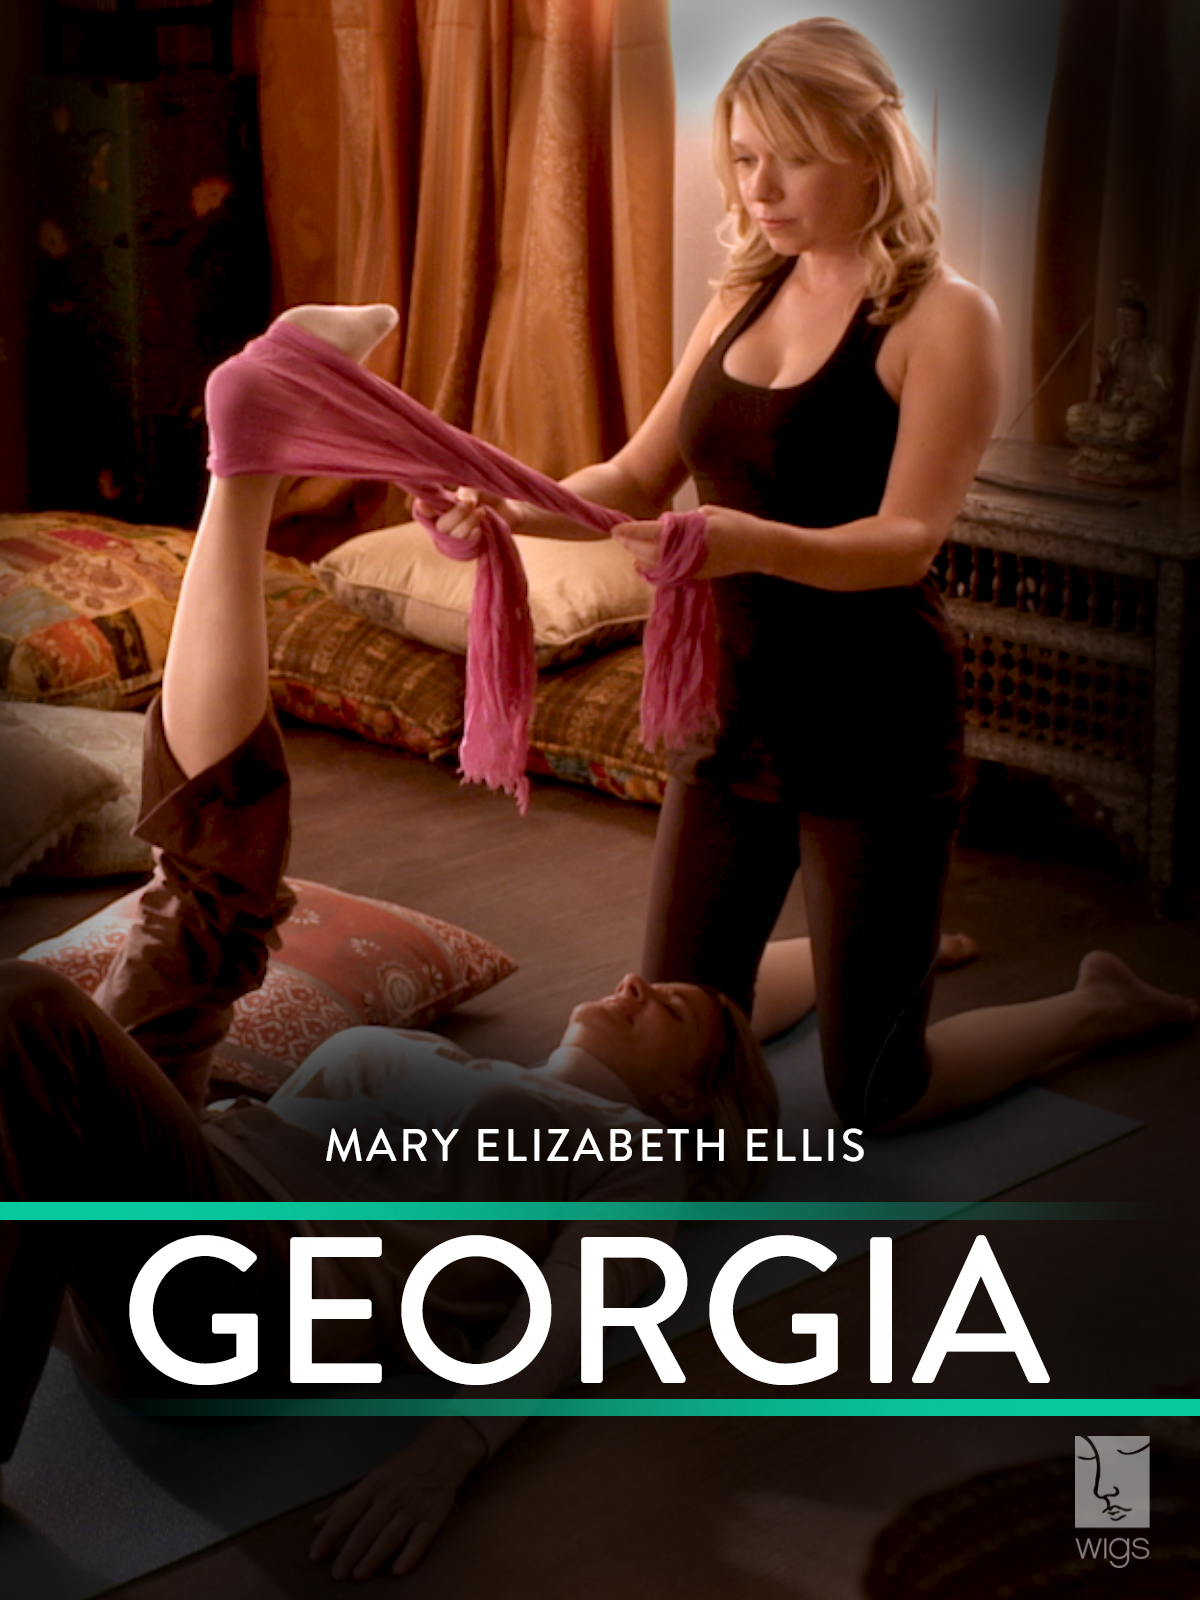 Mary Elizabeth Ellis in Georgia (2012)